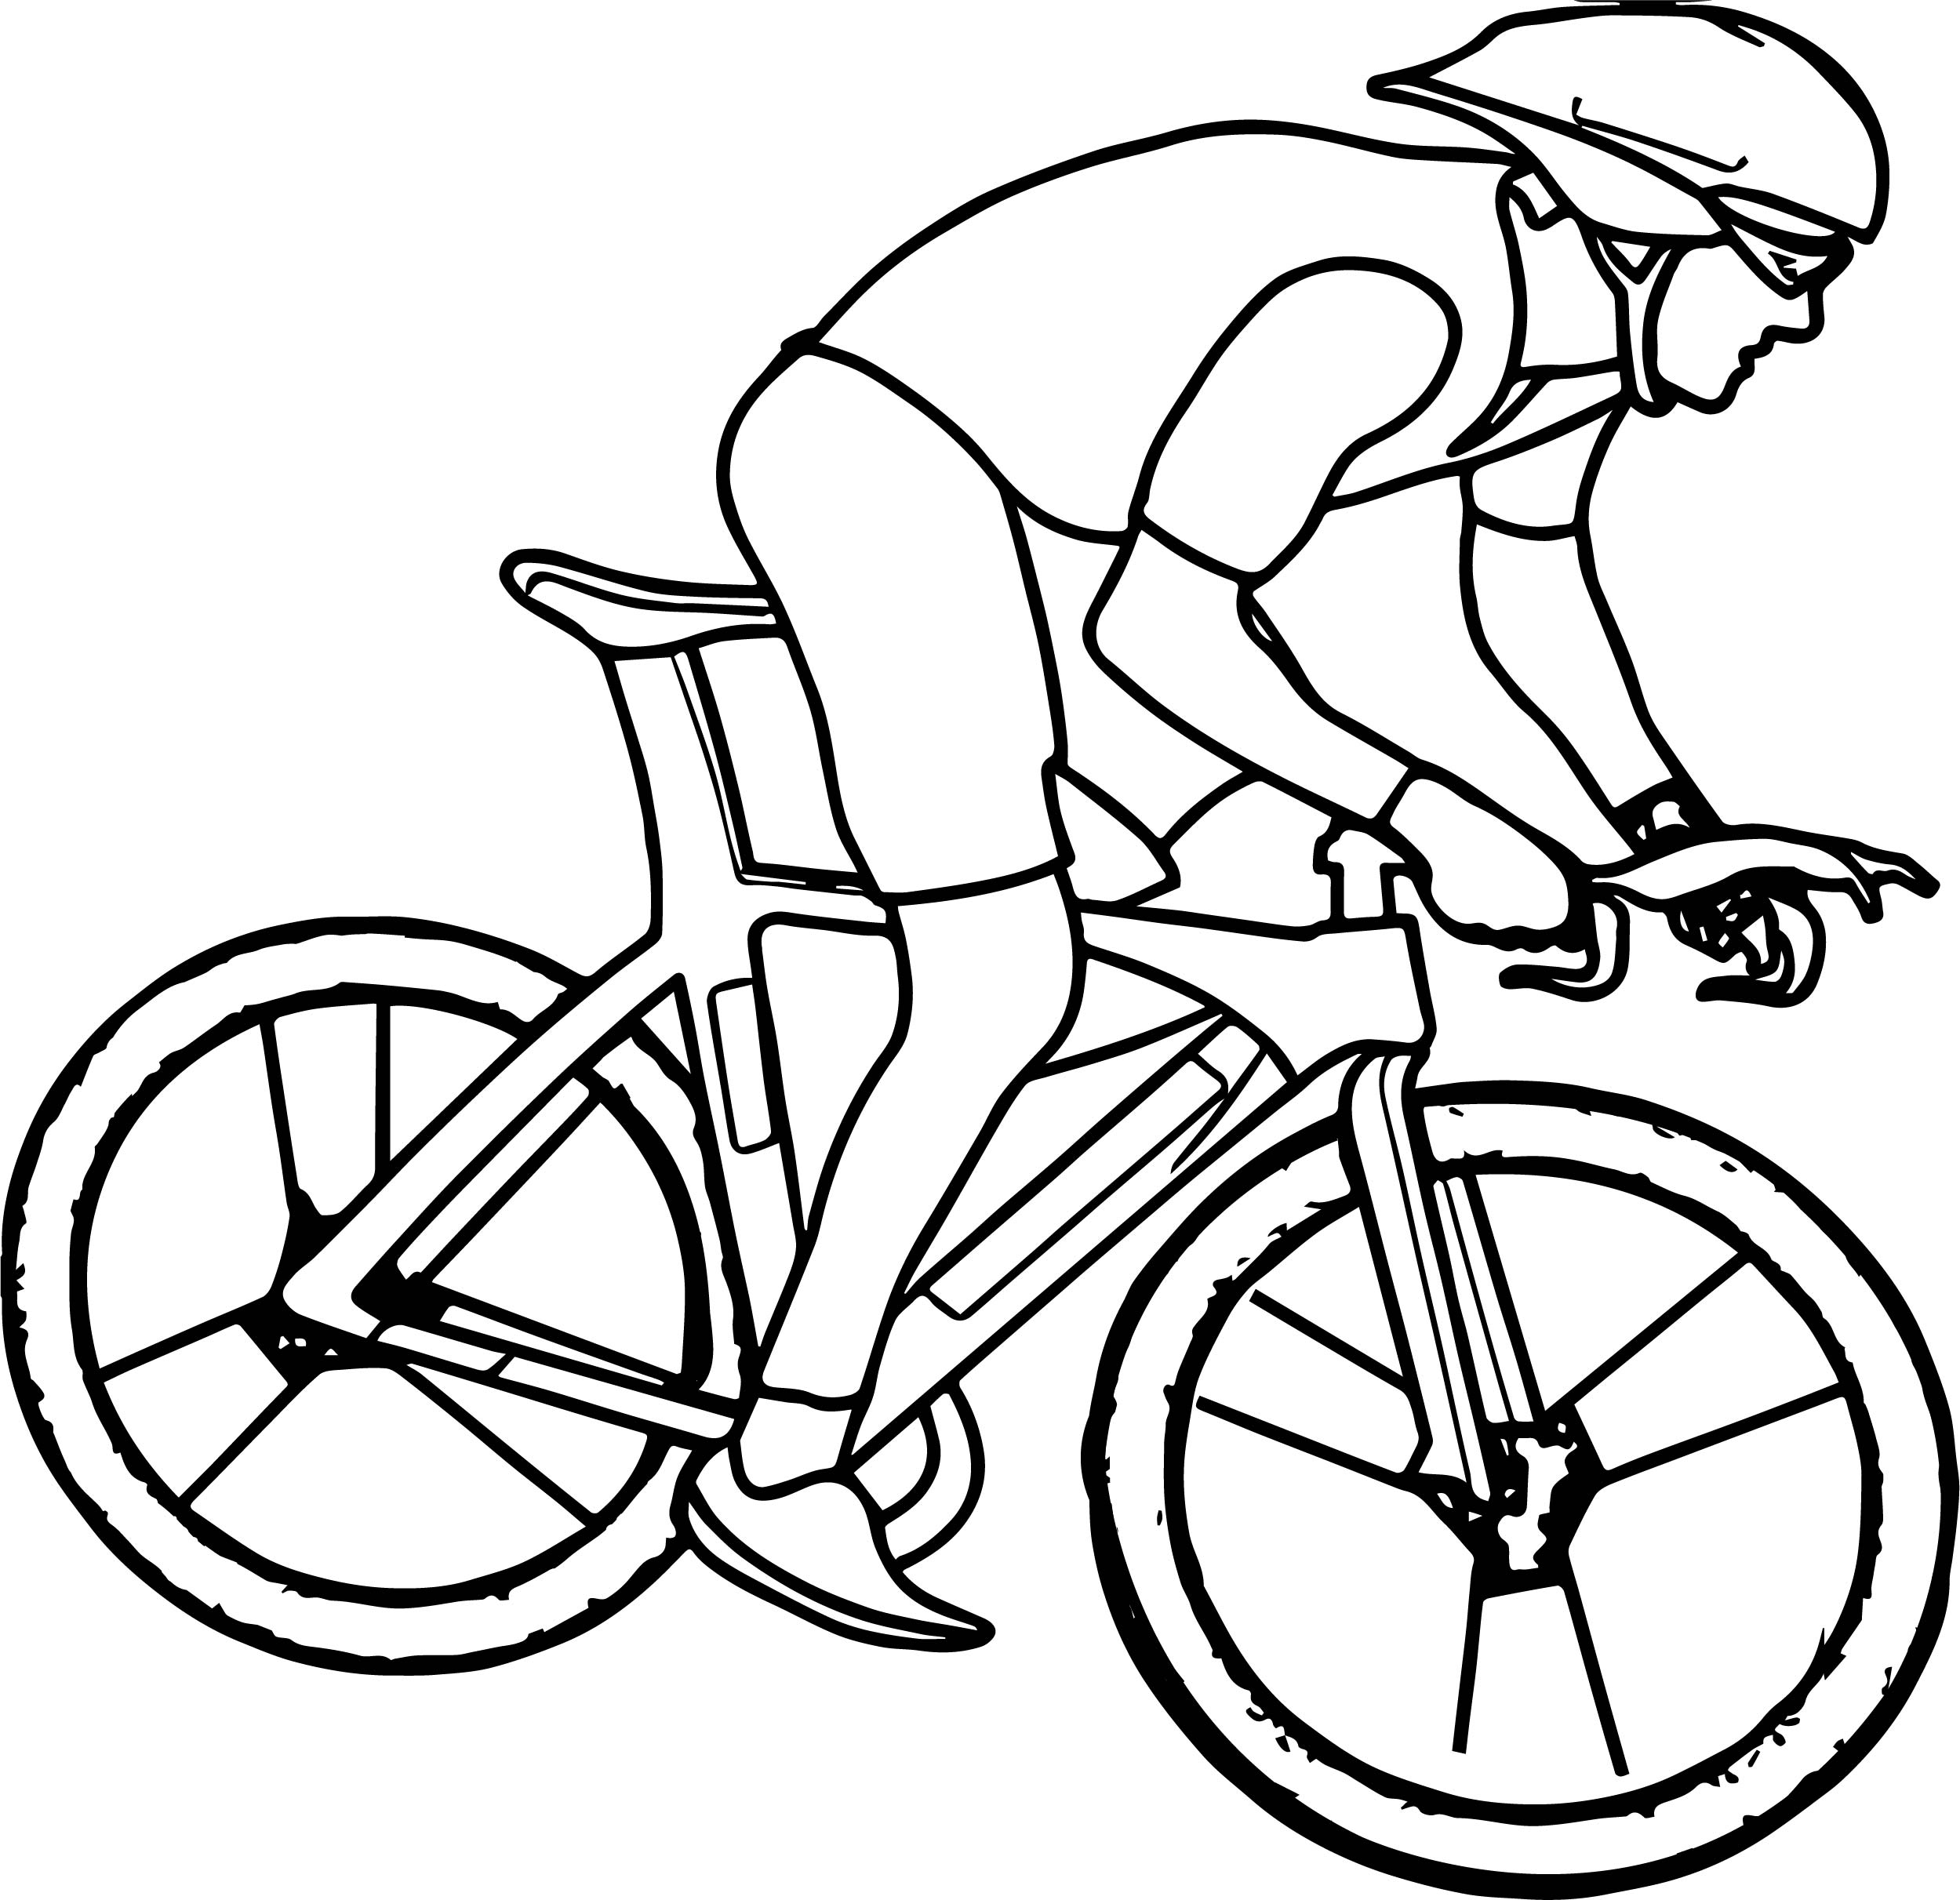 contoh gambar sketsa sepeda hd